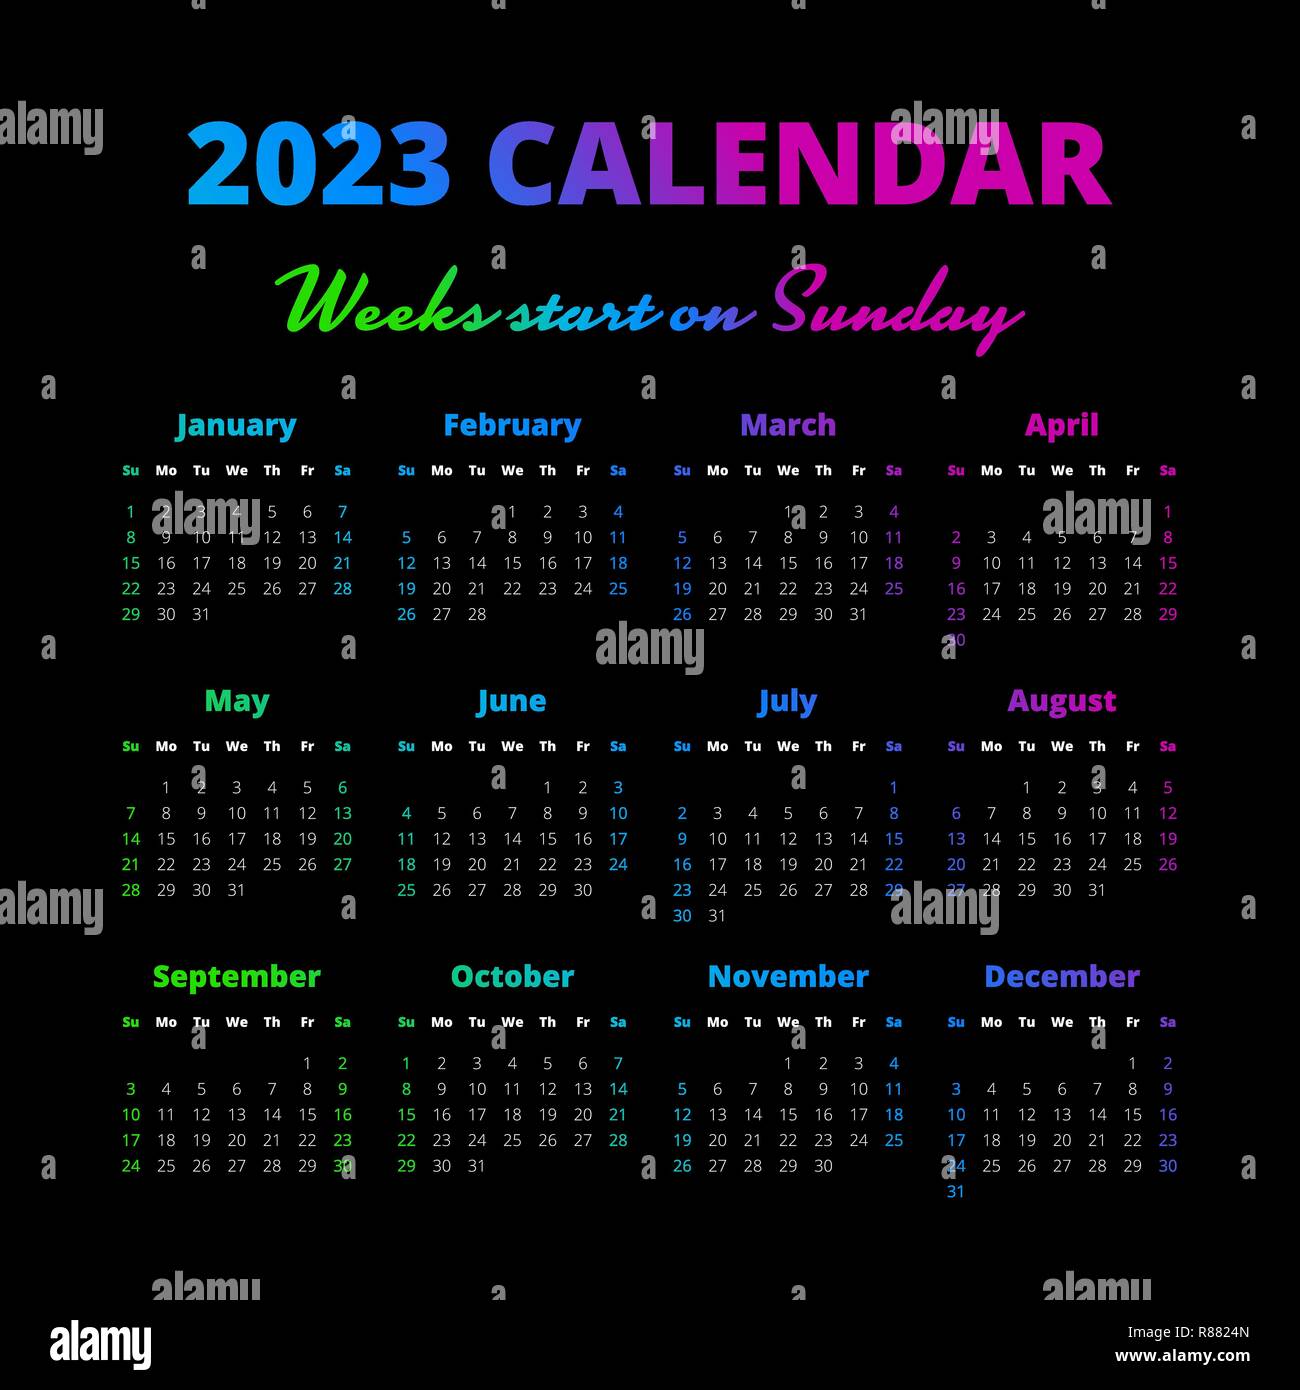 Bạn muốn có một lịch để giúp bạn tổ chức công việc trong năm một cách dễ dàng và tiện lợi? Hãy xem hình ảnh về Simple year calendar, một cuốn lịch đơn giản và thông minh. Nó chắc chắn sẽ giúp bạn hoàn thành công việc của mình một cách chính xác và đúng hạn.